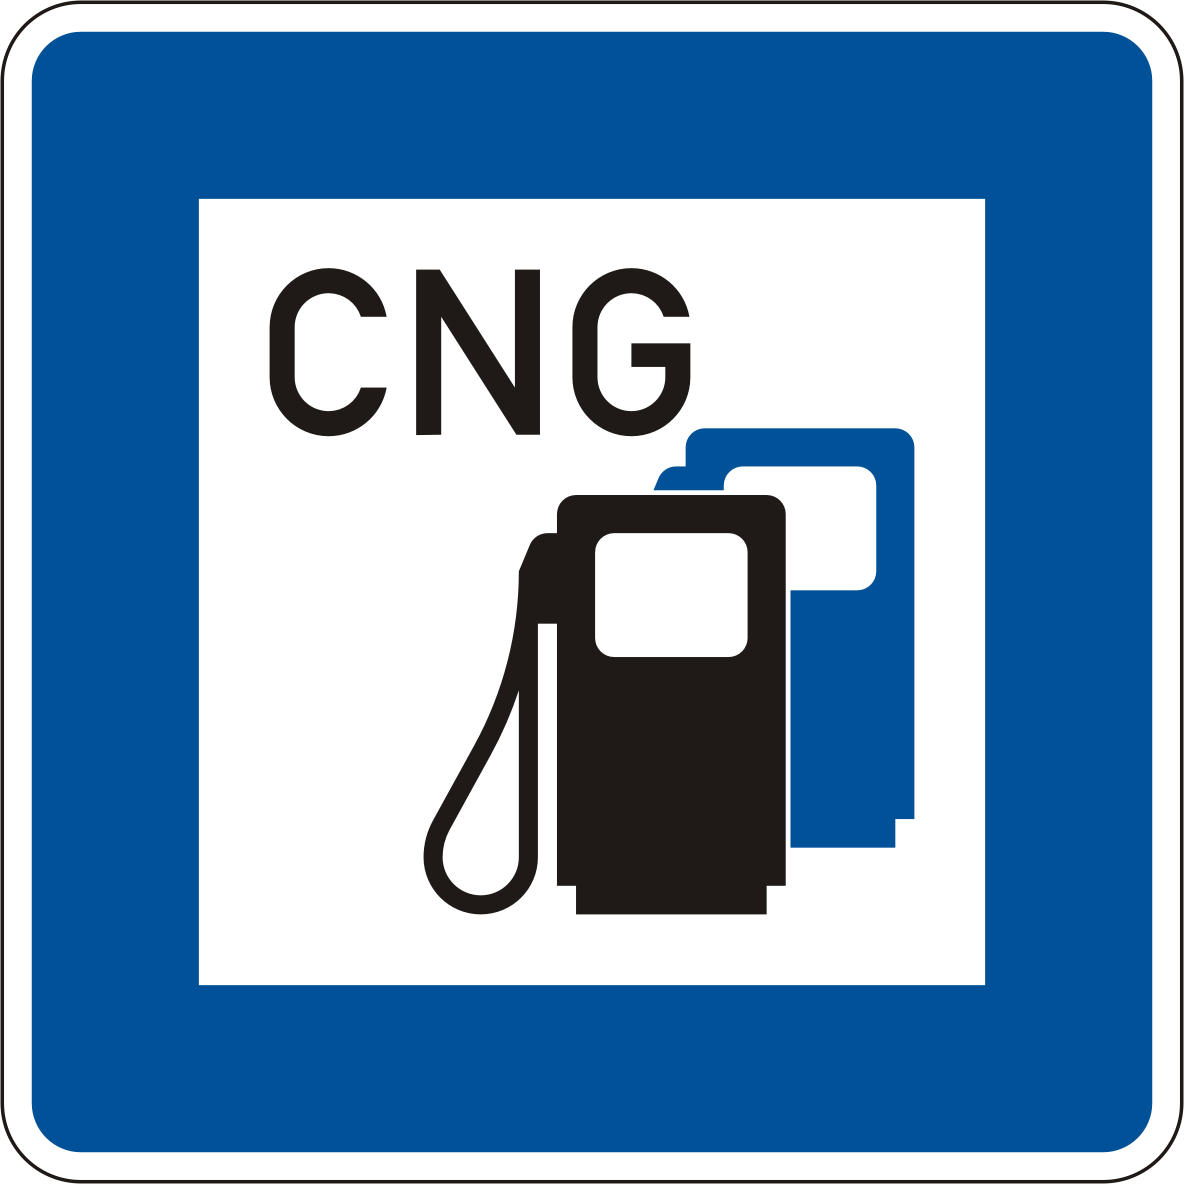 افزایش مقبولیت خودروی گازسوز ، مهمترین عامل افزایش مصرف CNG در کشور است